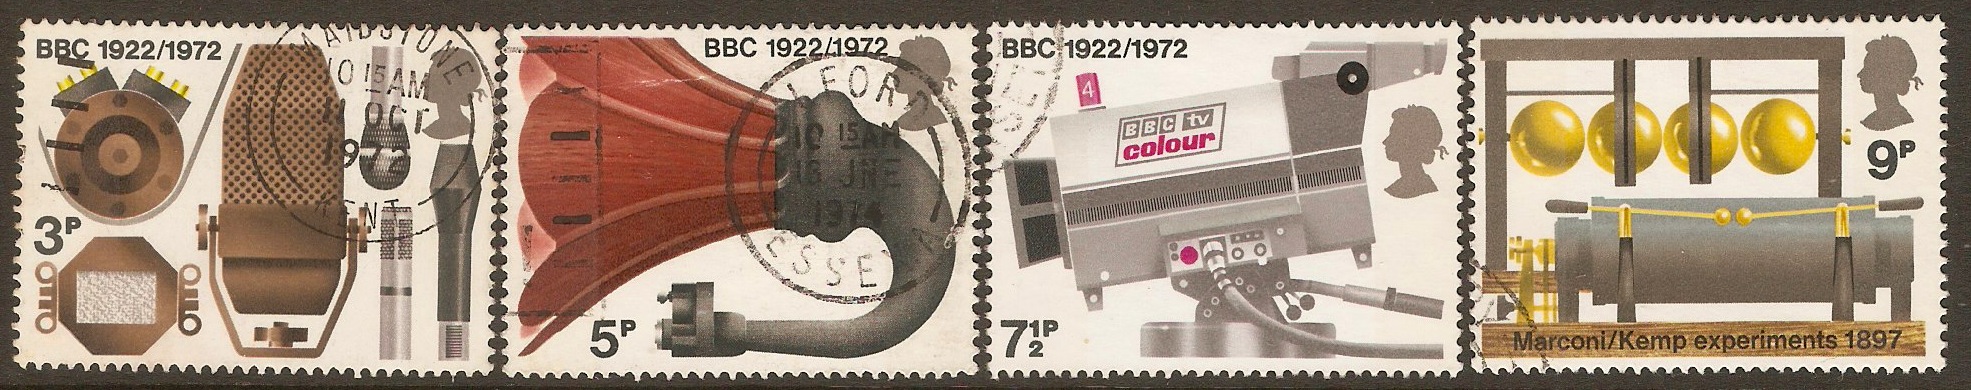 Great Britain 1972 Broadcasting Anniversaries set. SG909-SG912.